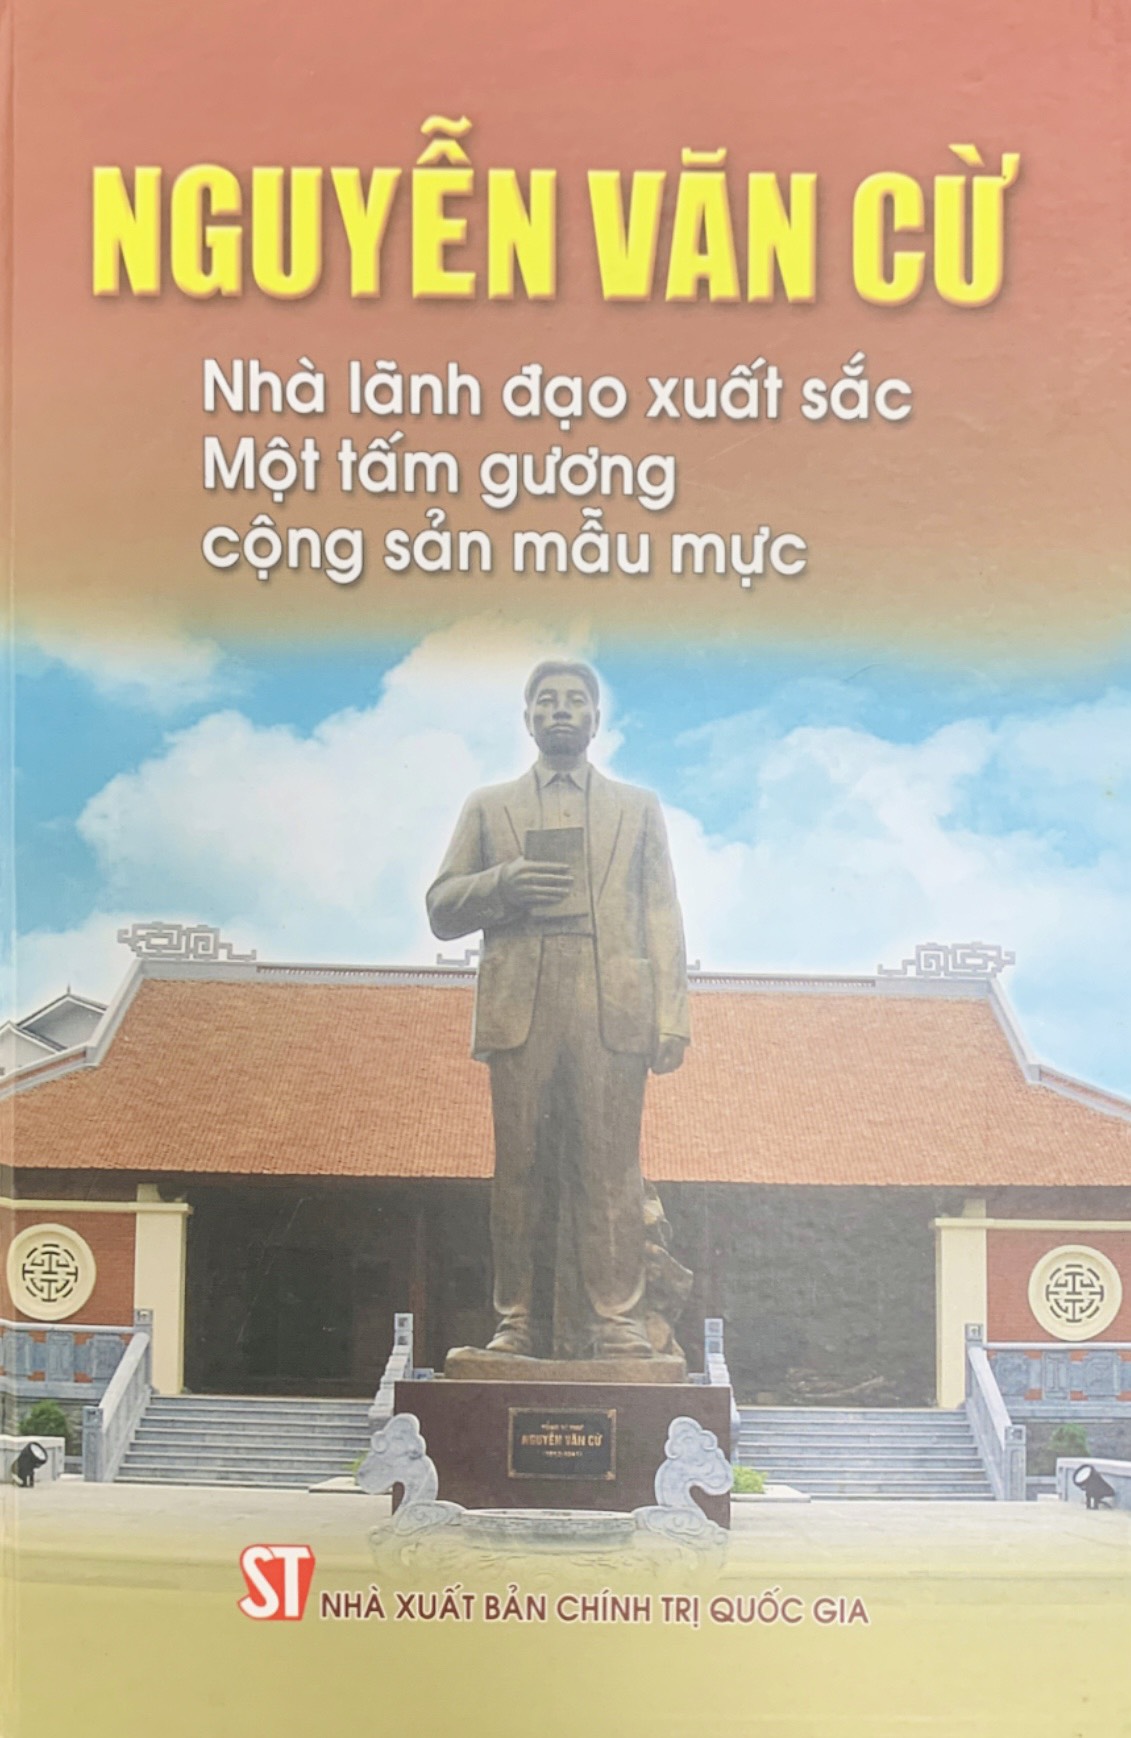 Nguyễn Văn Cừ: Nhà lãnh đạo xuất sắc - Một tấm gương cộng sản mẫu mực